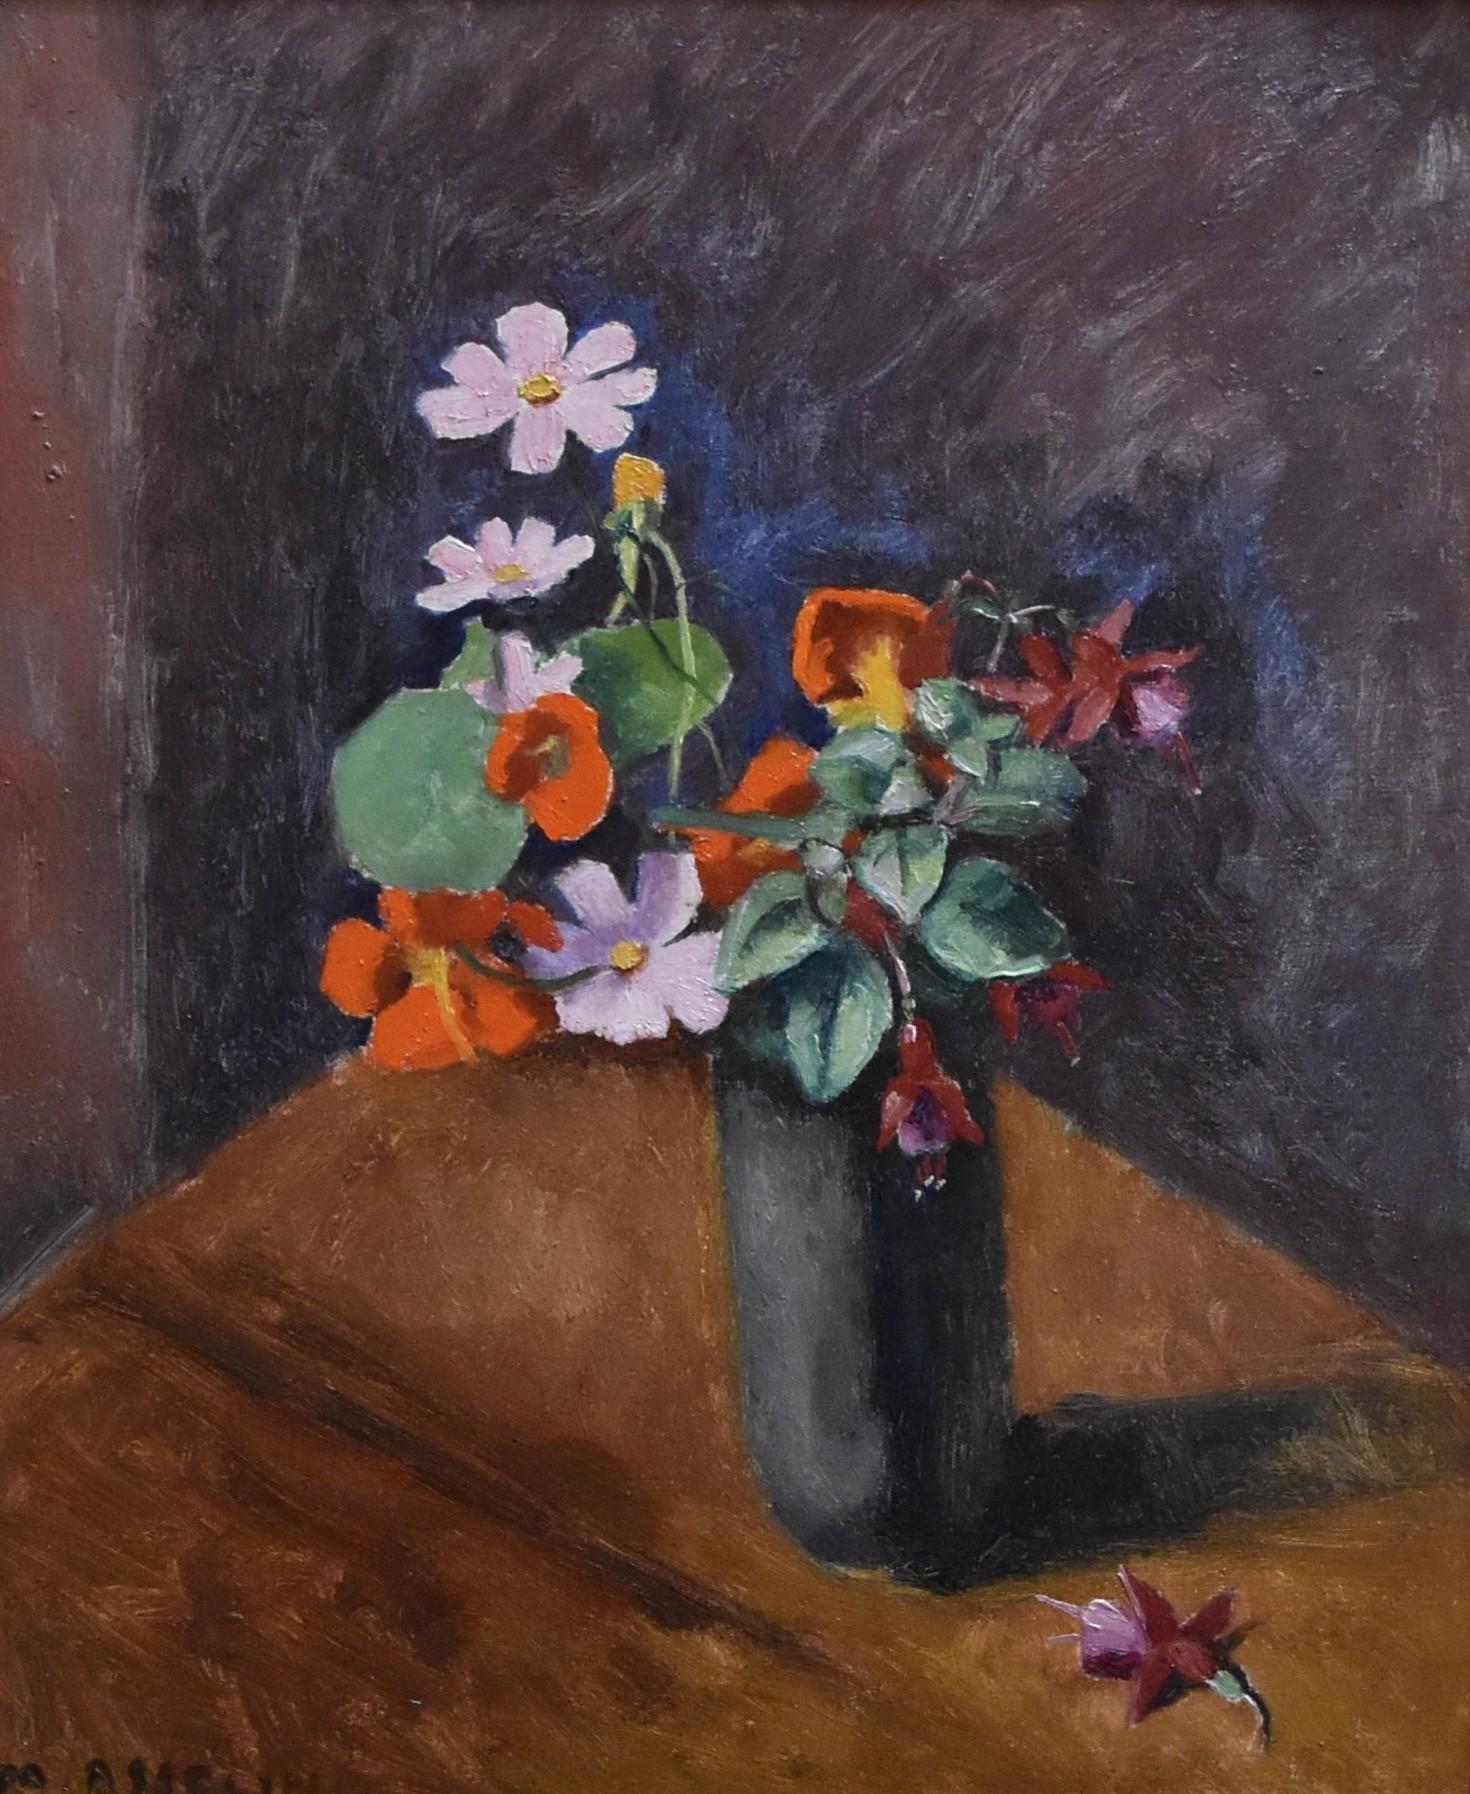 Maurice Asselin (1882-1947) 
Ein Blumenstrauß in einer Vase
Signiert unten links
Öl auf Leinwand
In gutem Zustand
46 x 38 cm
Gerahmt : 52 x 44 cm

Maurice Asselin wurde am 24. Juni 1882 in Orléans geboren. Er war Schüler von Fernand Cormon an der